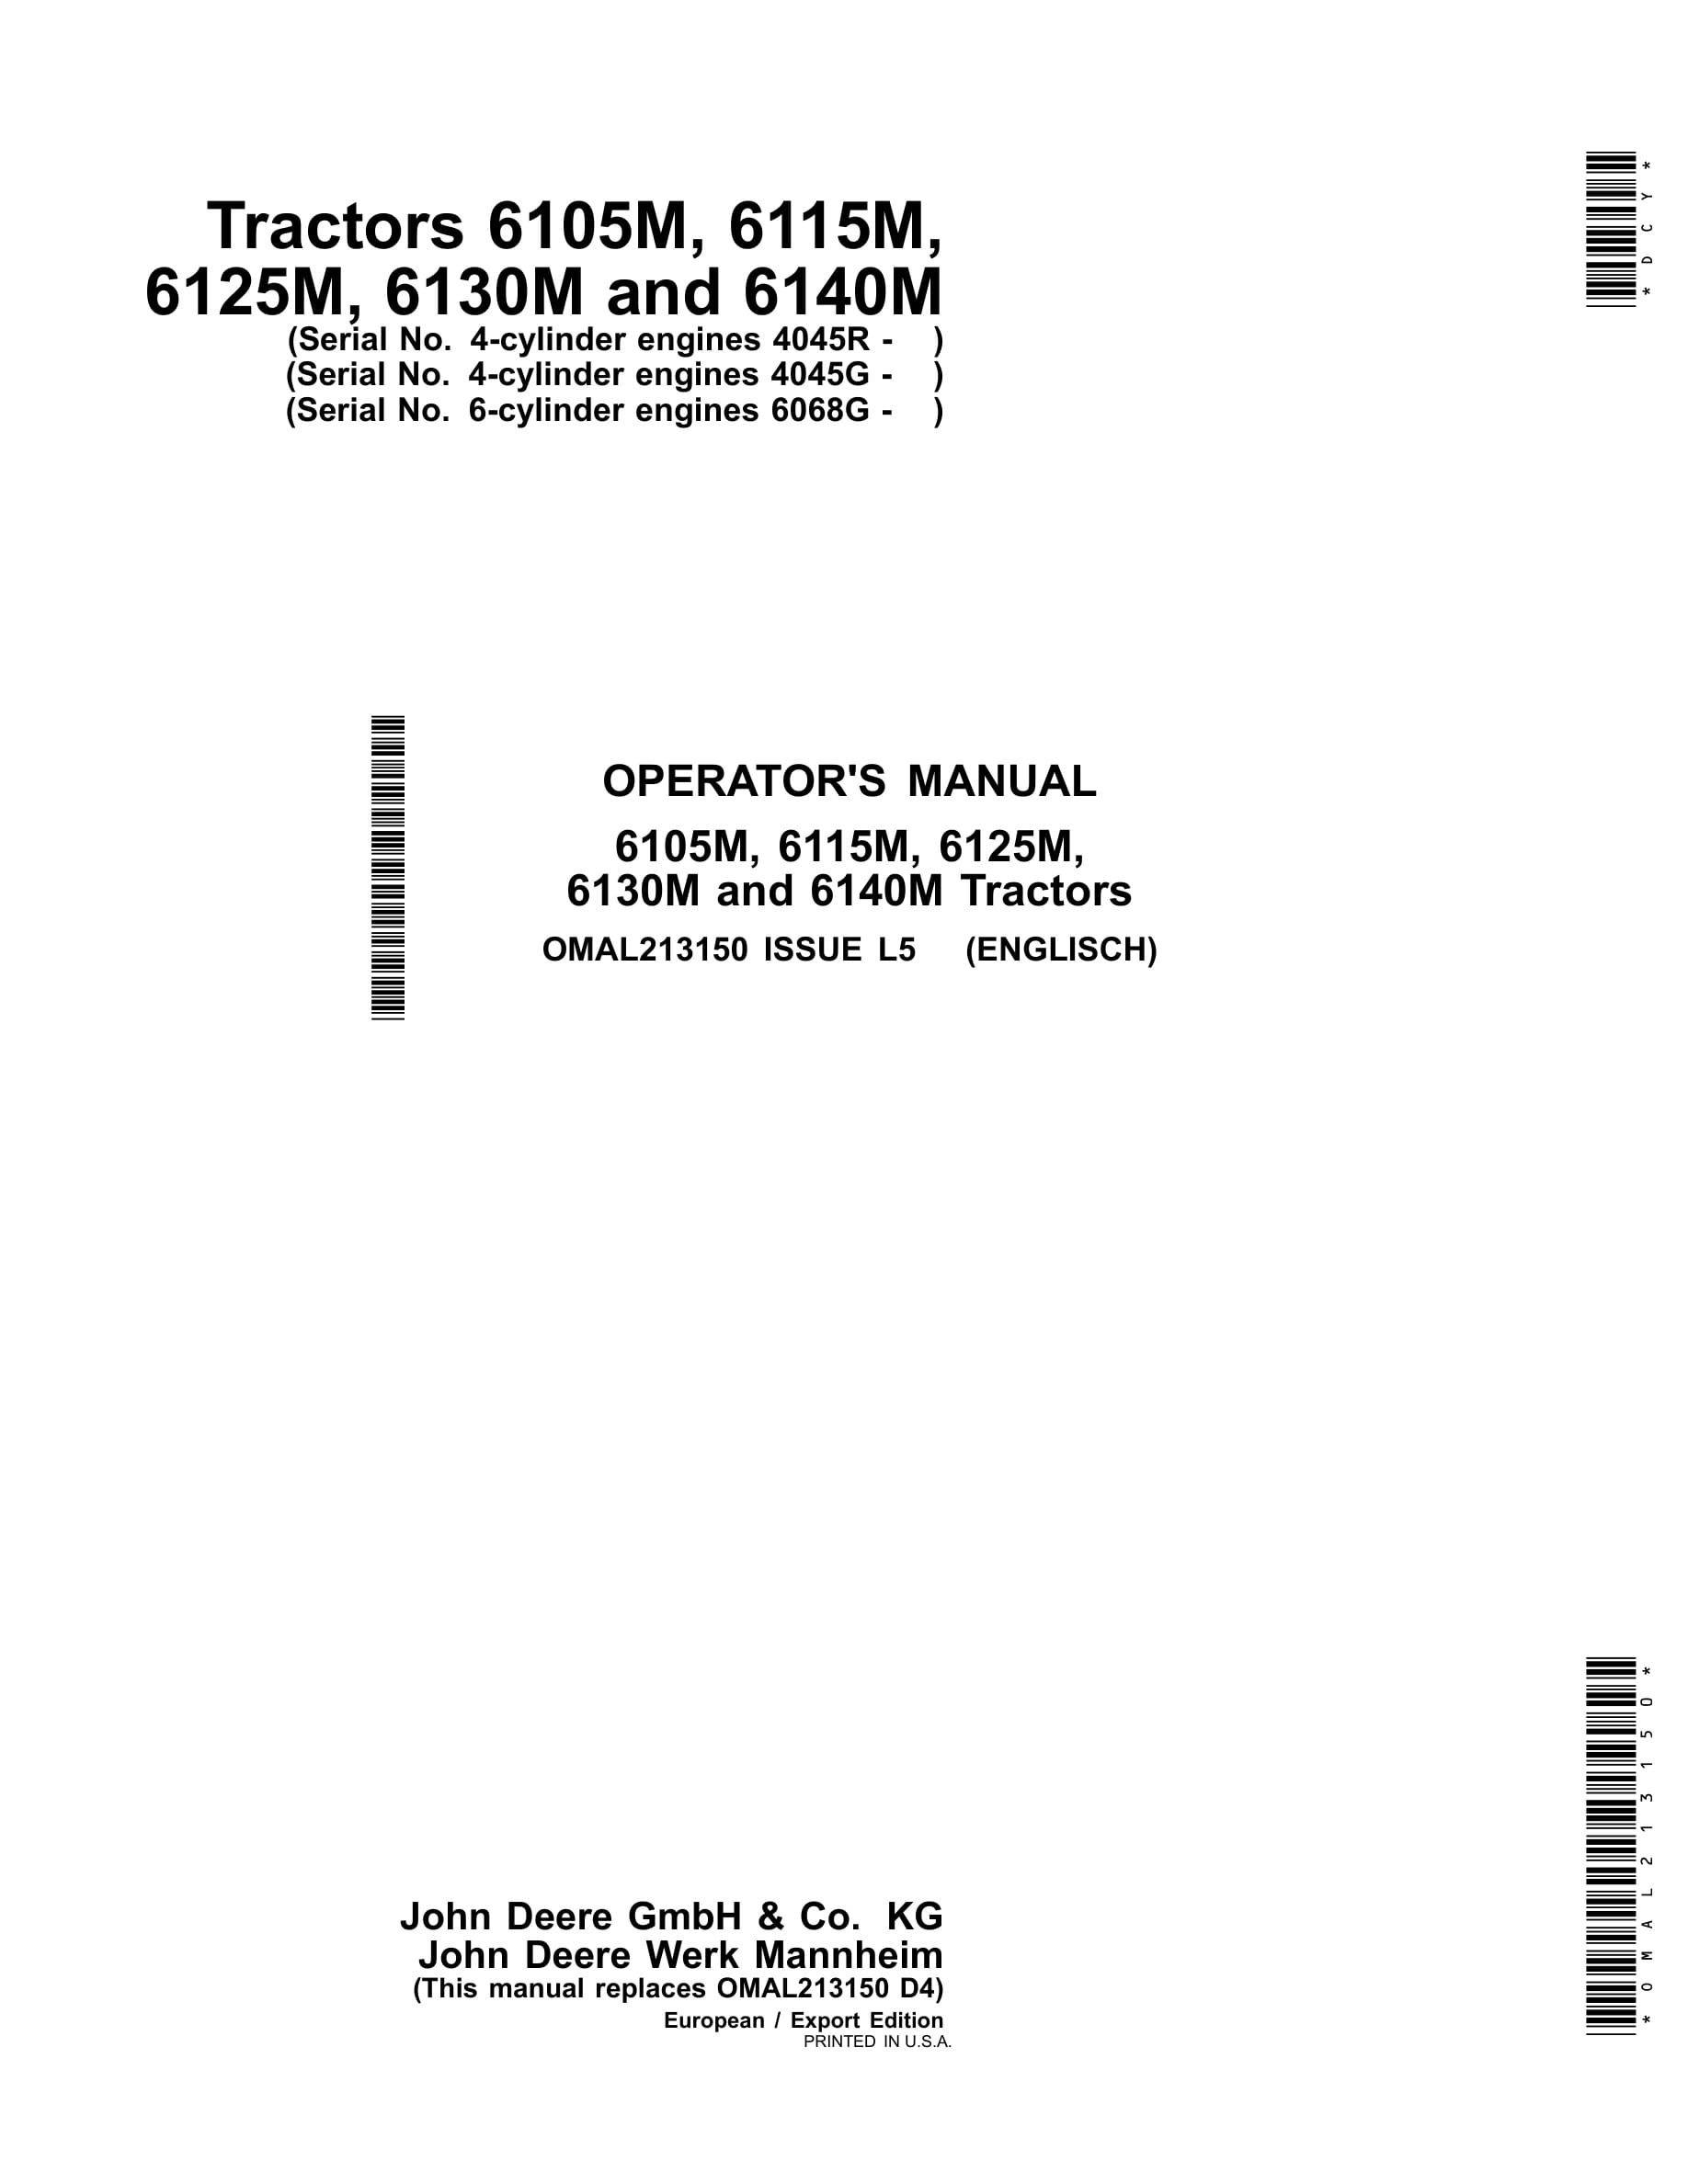 John Deere 6105m, 6115m, 6125m, 6130m And 6140m Tractors Operator Manuals OMAL213150-1